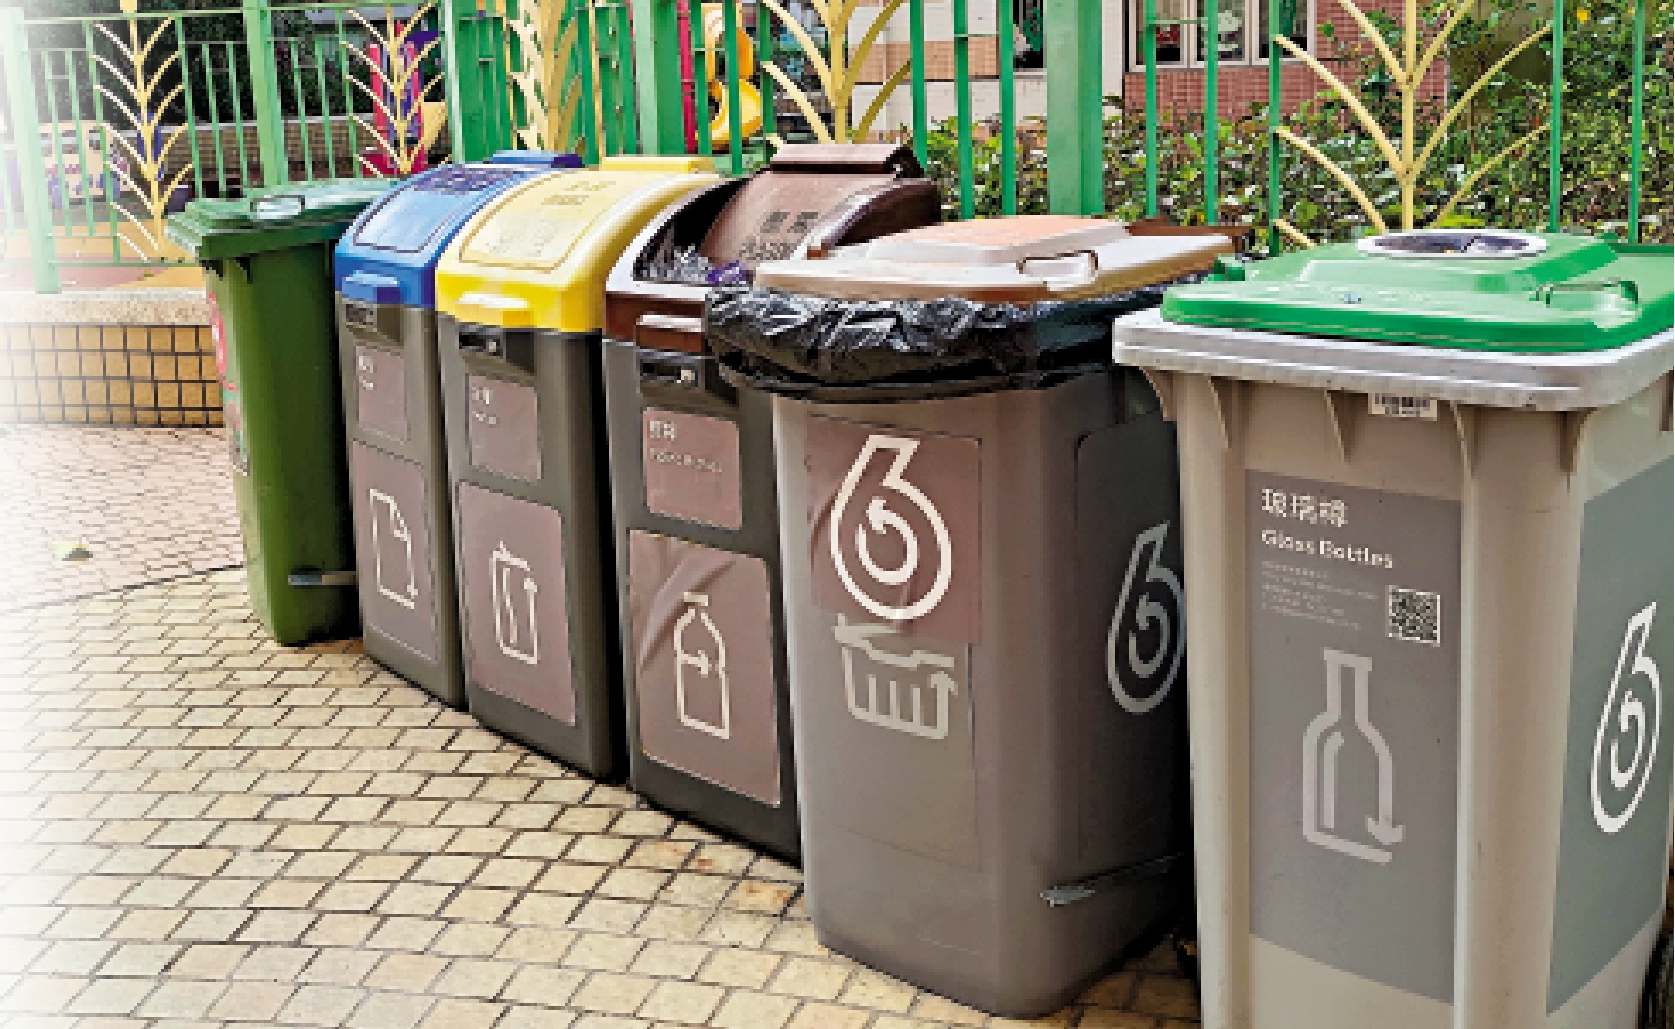 　　圖：垃圾收費「先行先試」計劃今起推行，荃灣滿樂大廈安寧樓是其中一個試點。圖為大廈內的回收分類垃圾桶。\大公報記者王亞毛攝